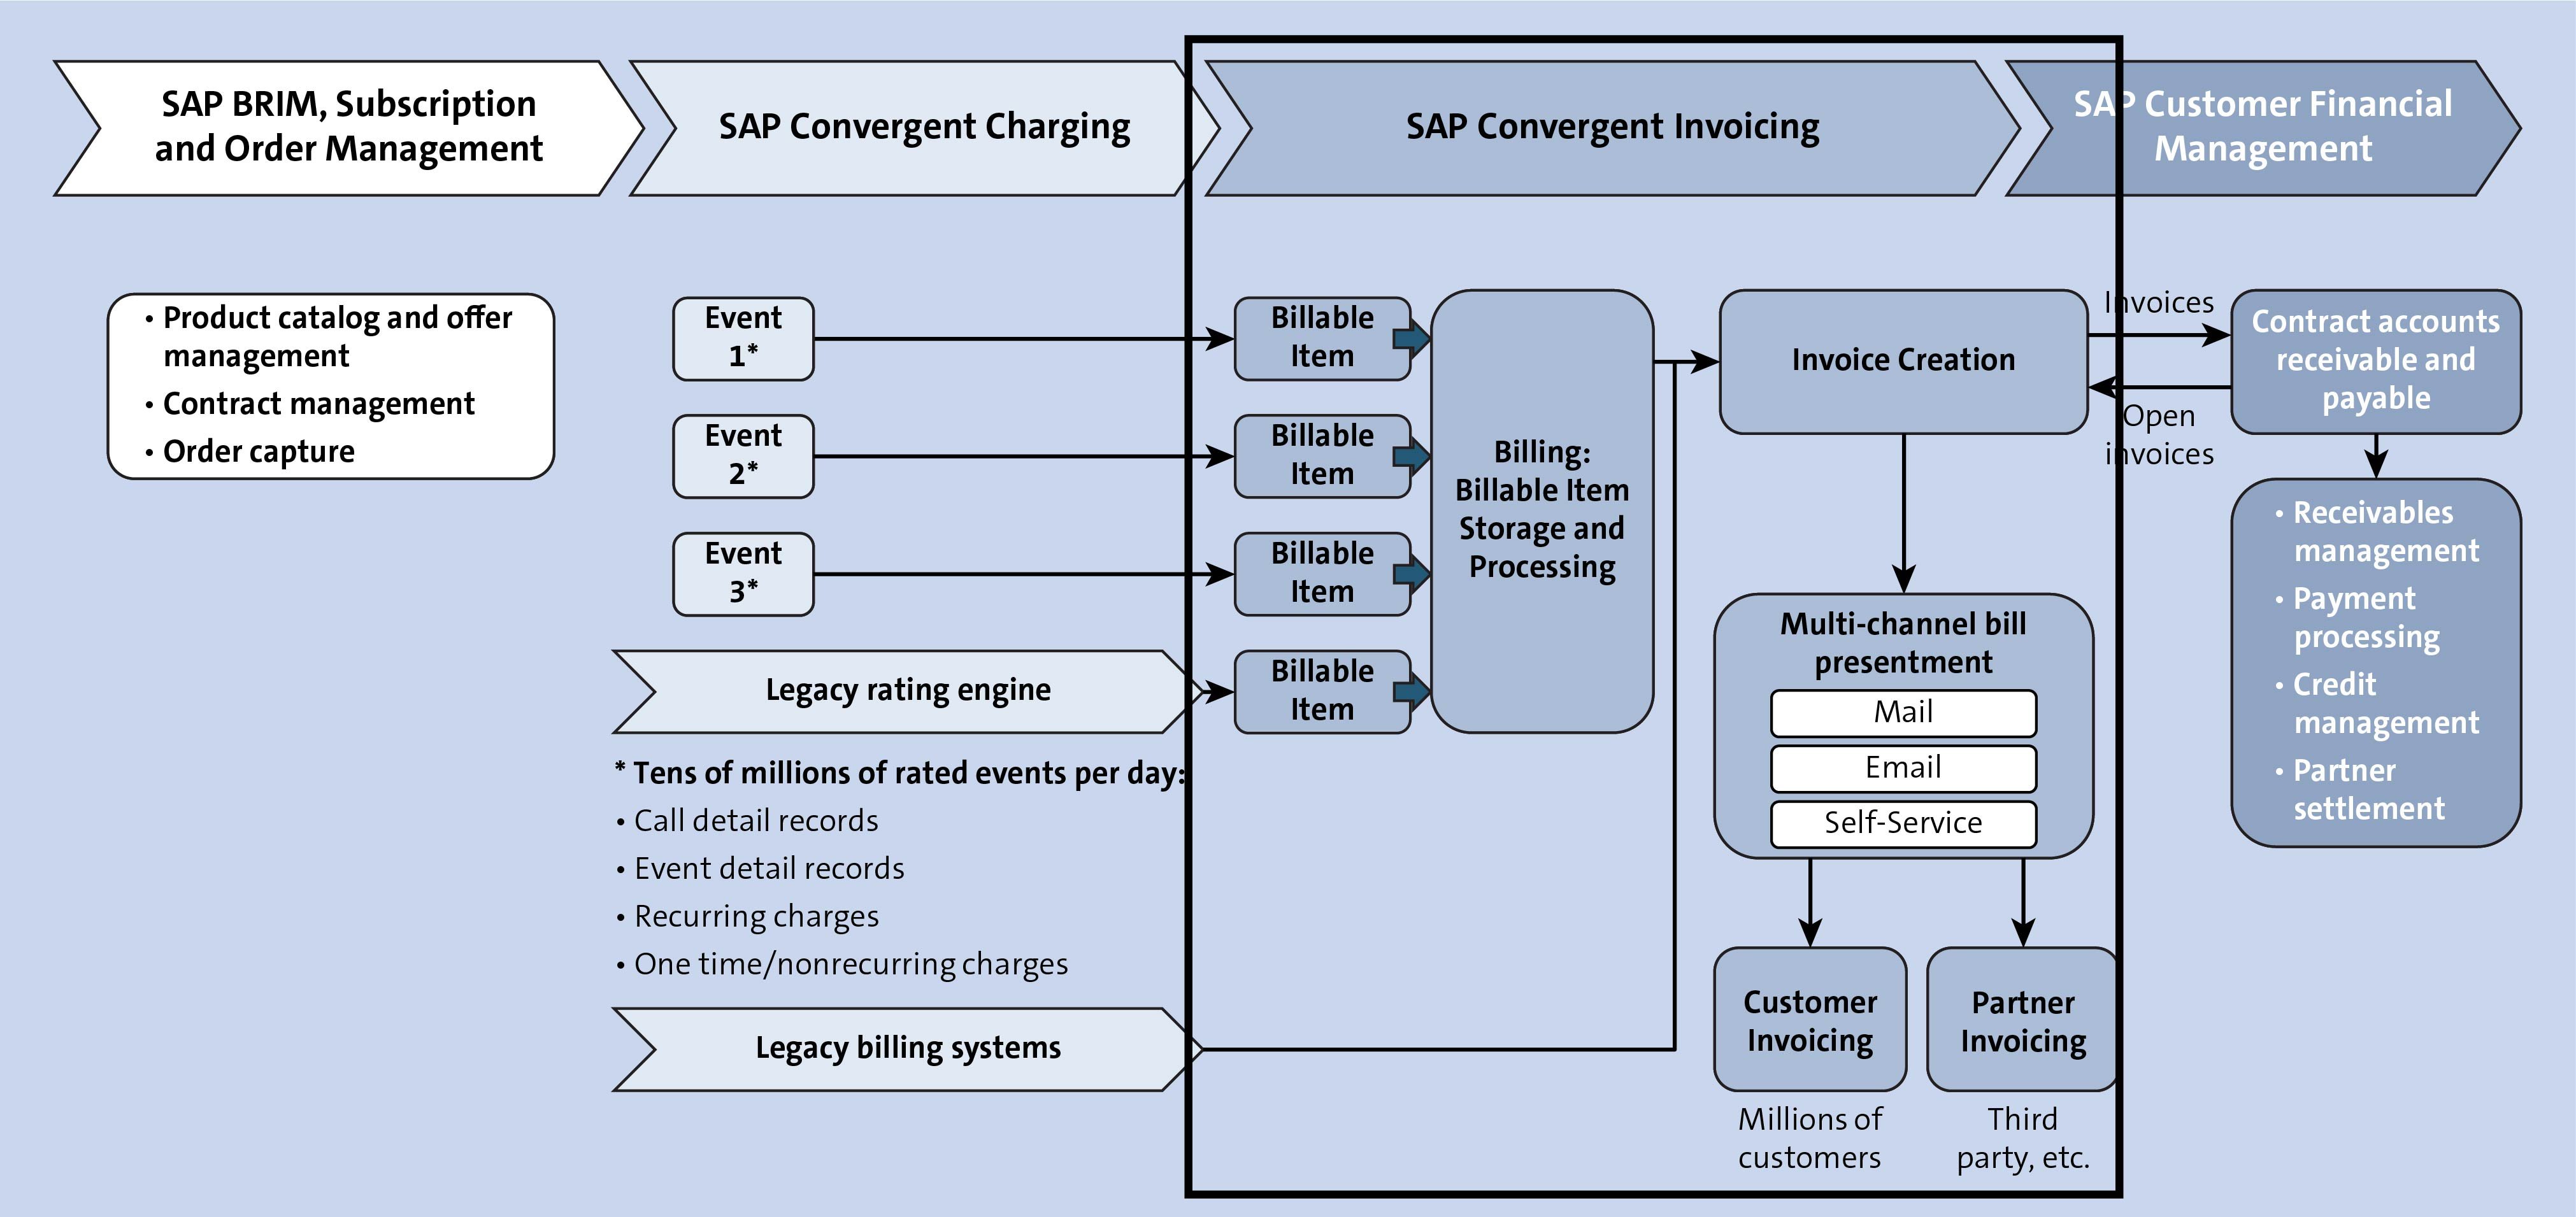 SAP Convergent Invoicing